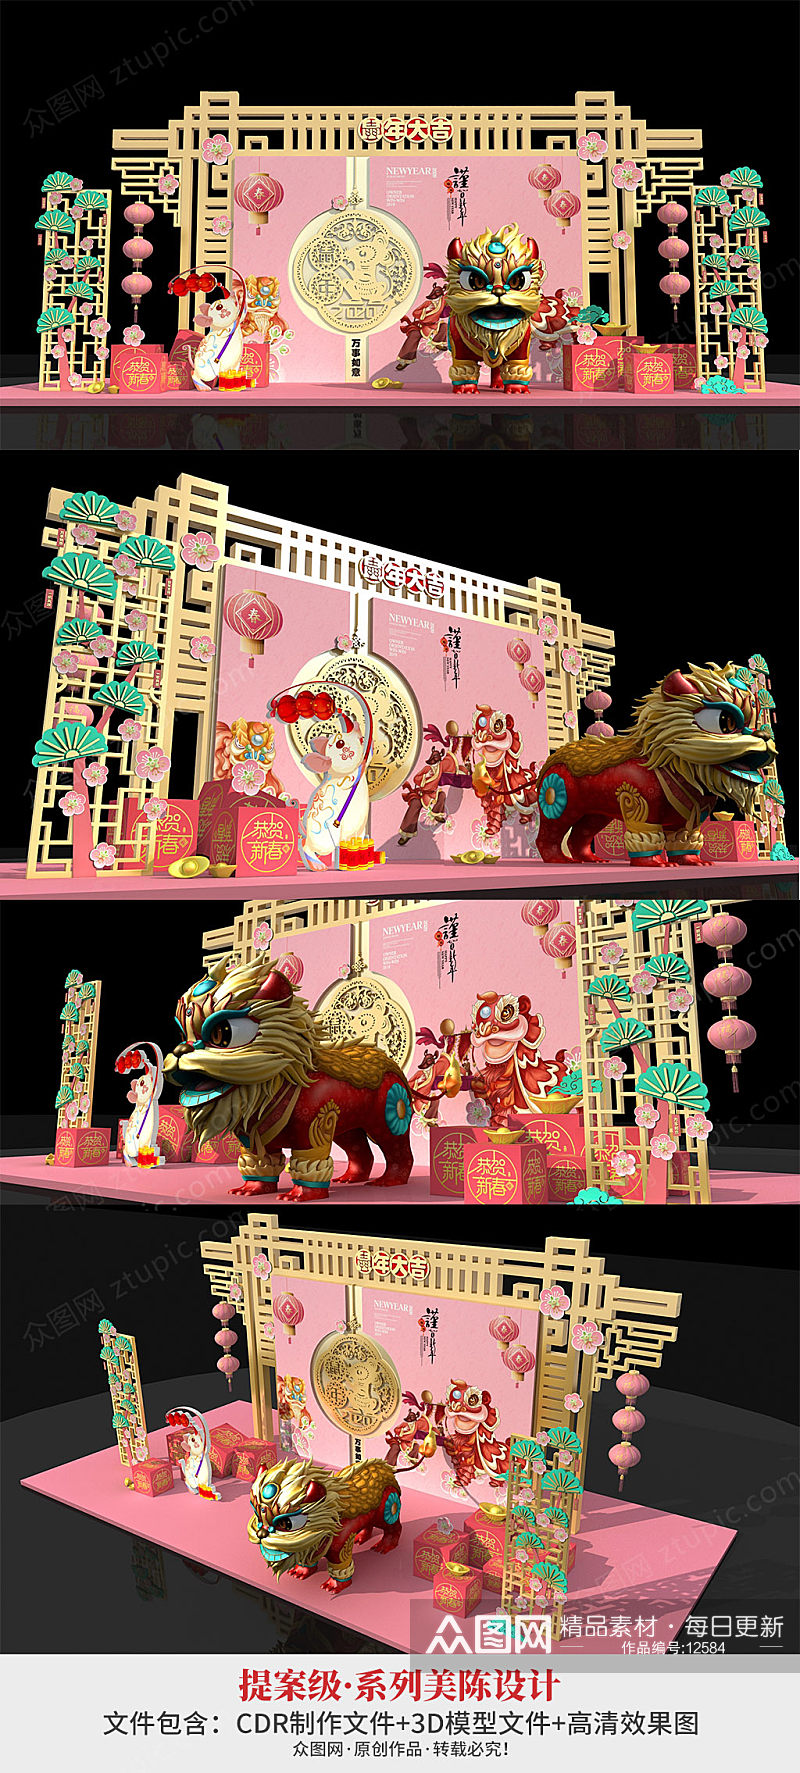 粉色2020新年大吉春节醒狮美陈美陈装饰效果图素材